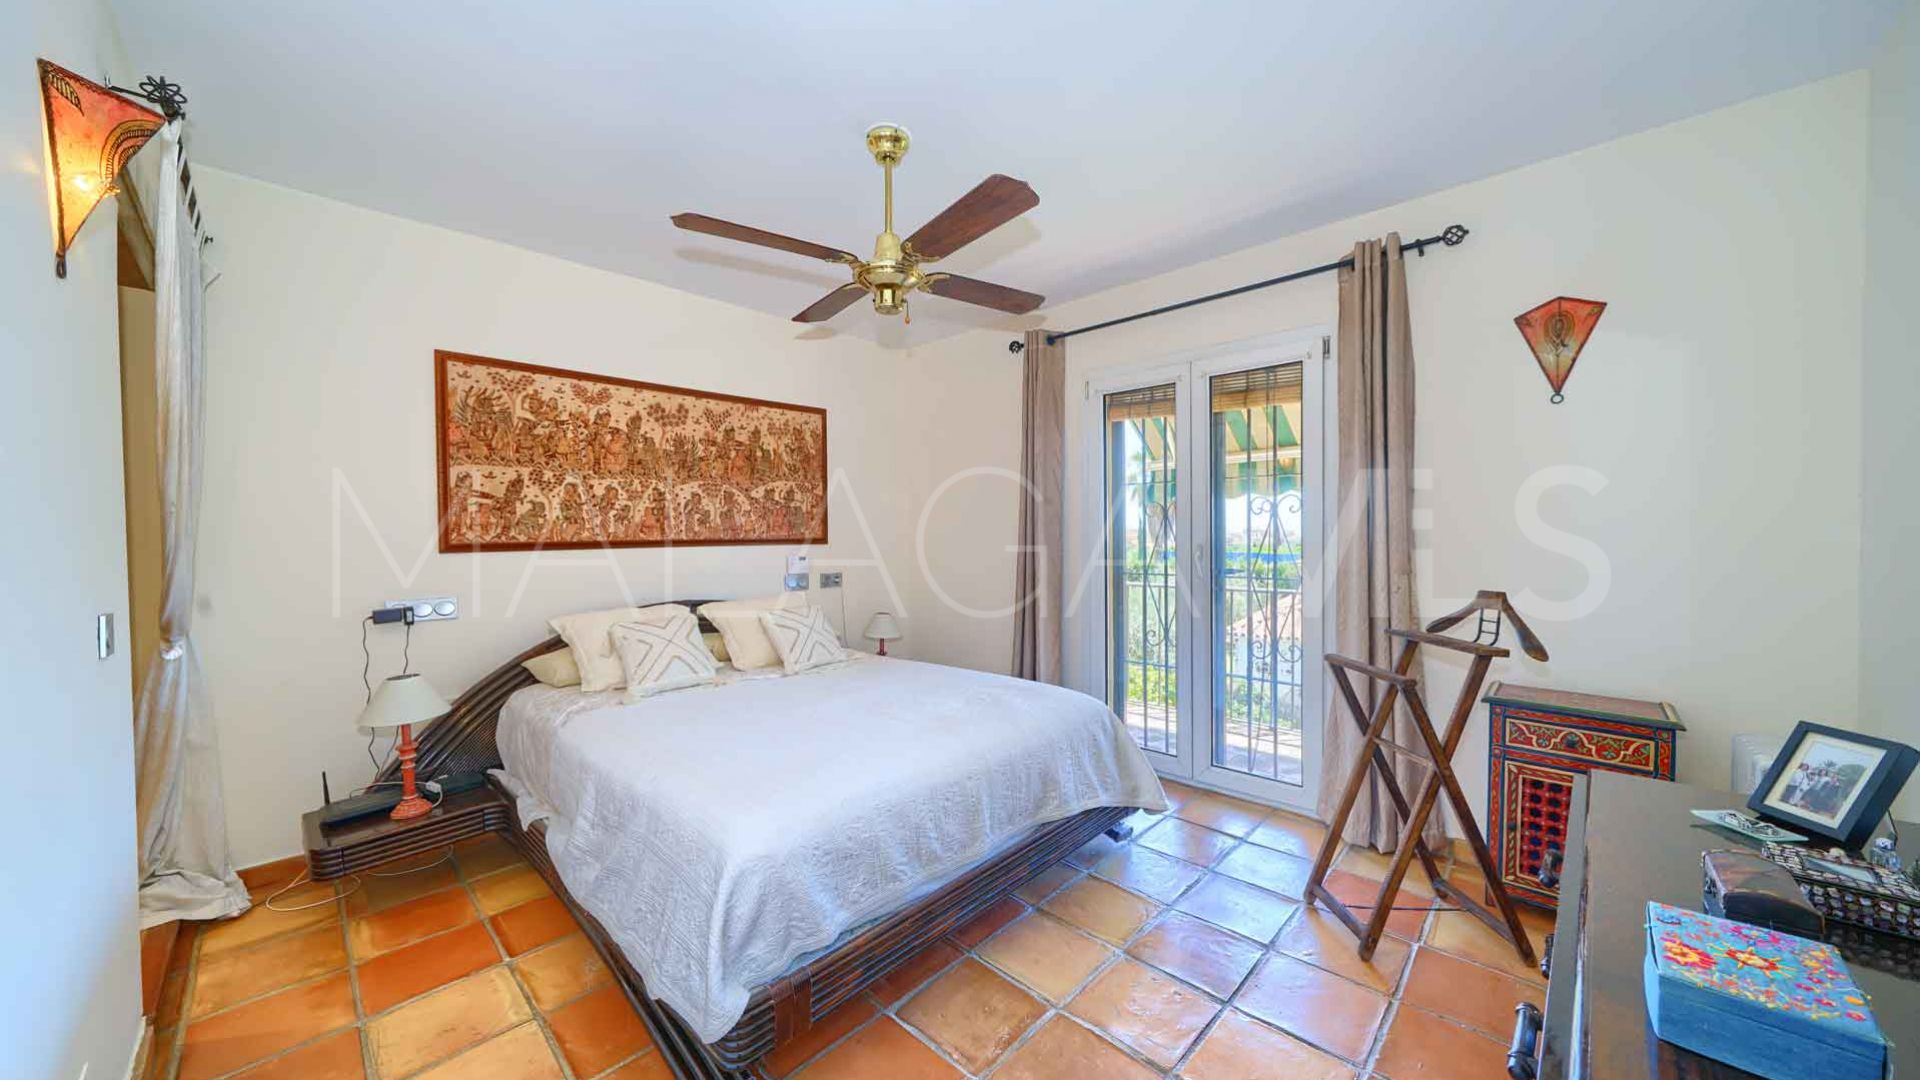 For sale El Mirador villa with 3 bedrooms